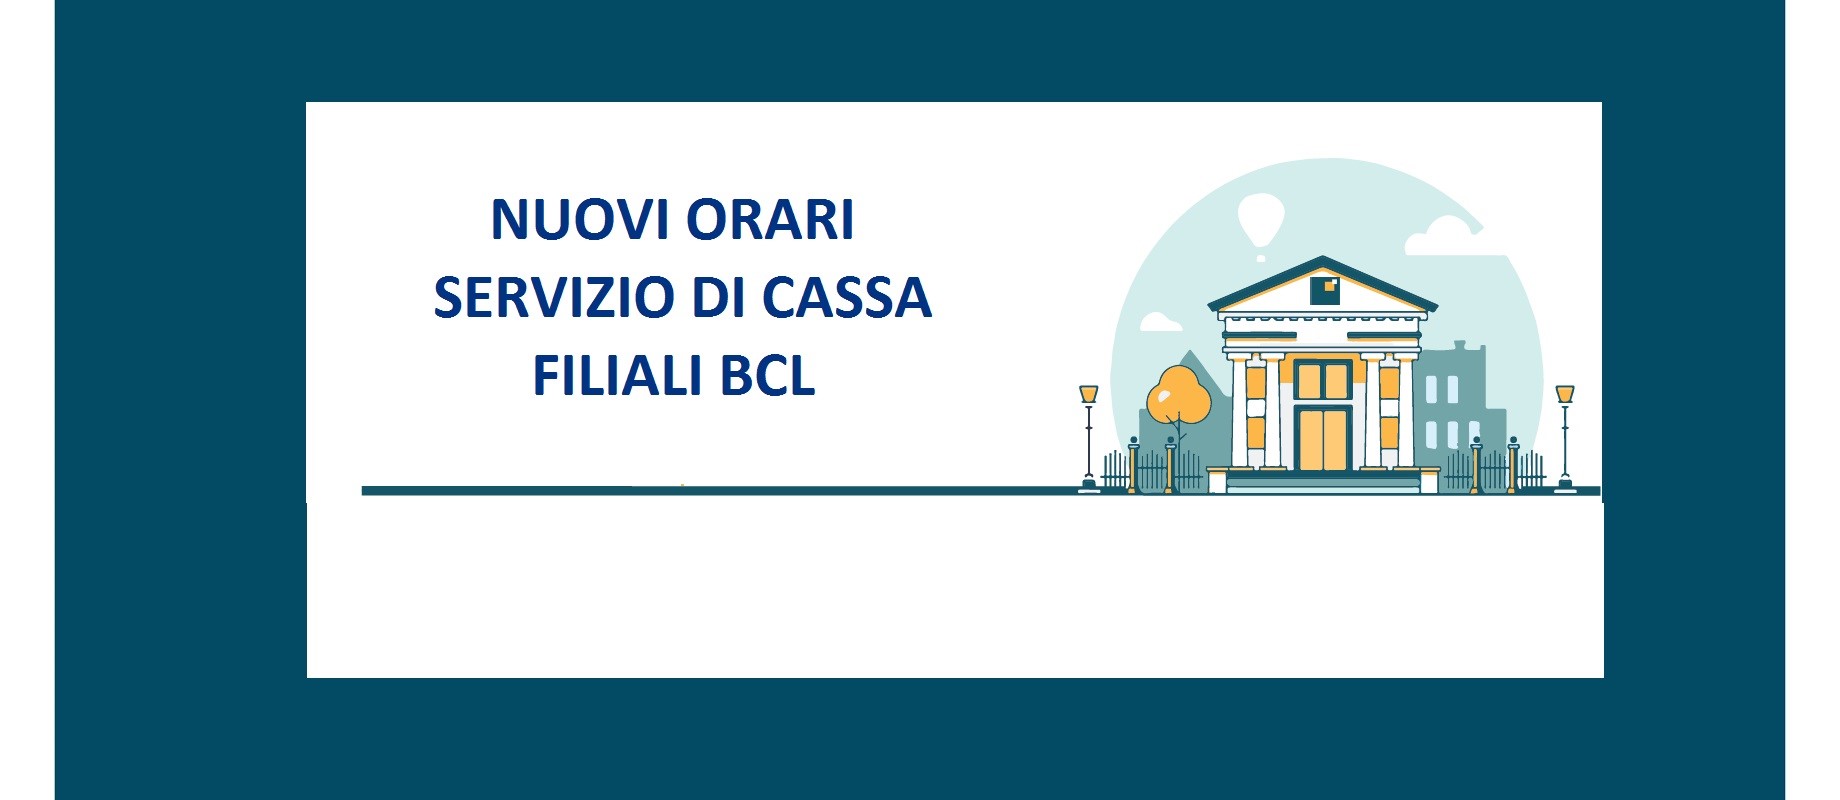 NUOVI ORARI SERVIZIO DI CASSA FILIALI BCL 